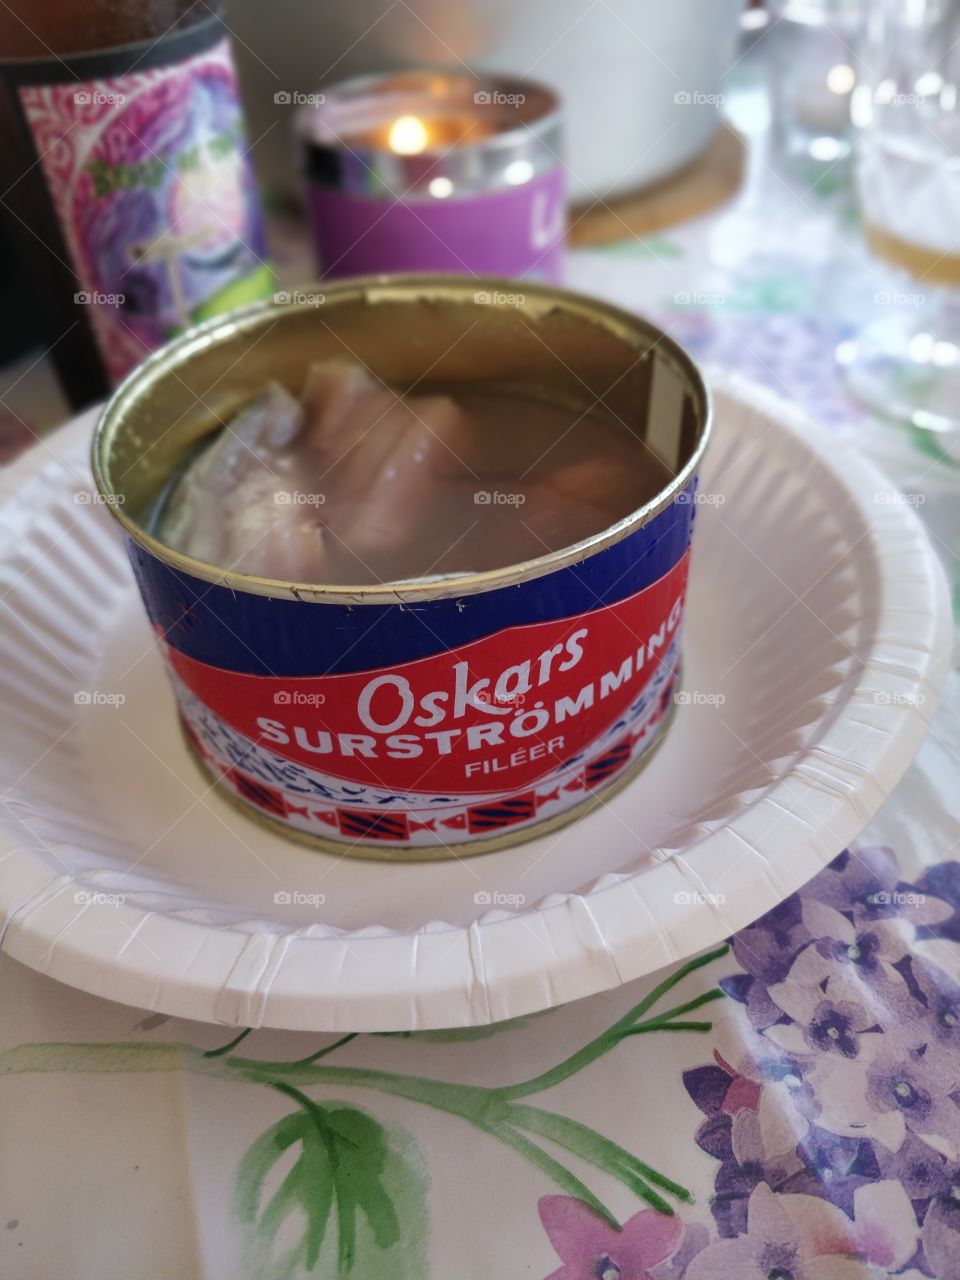 surströmming norrländsk matkultur